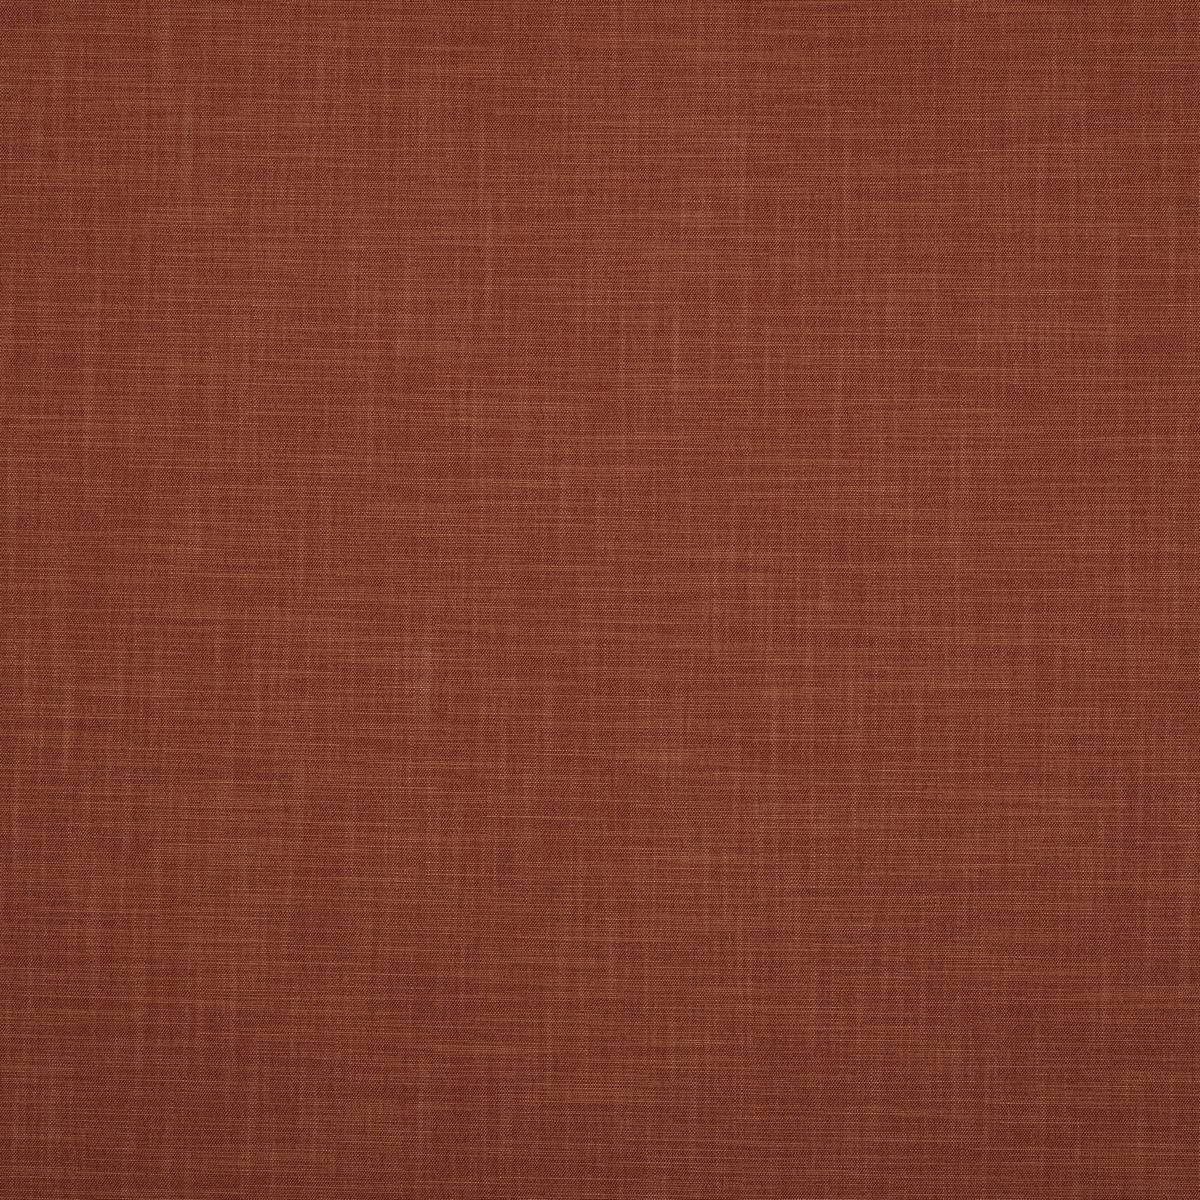 Zander Rust Fabric by Ashley Wilde